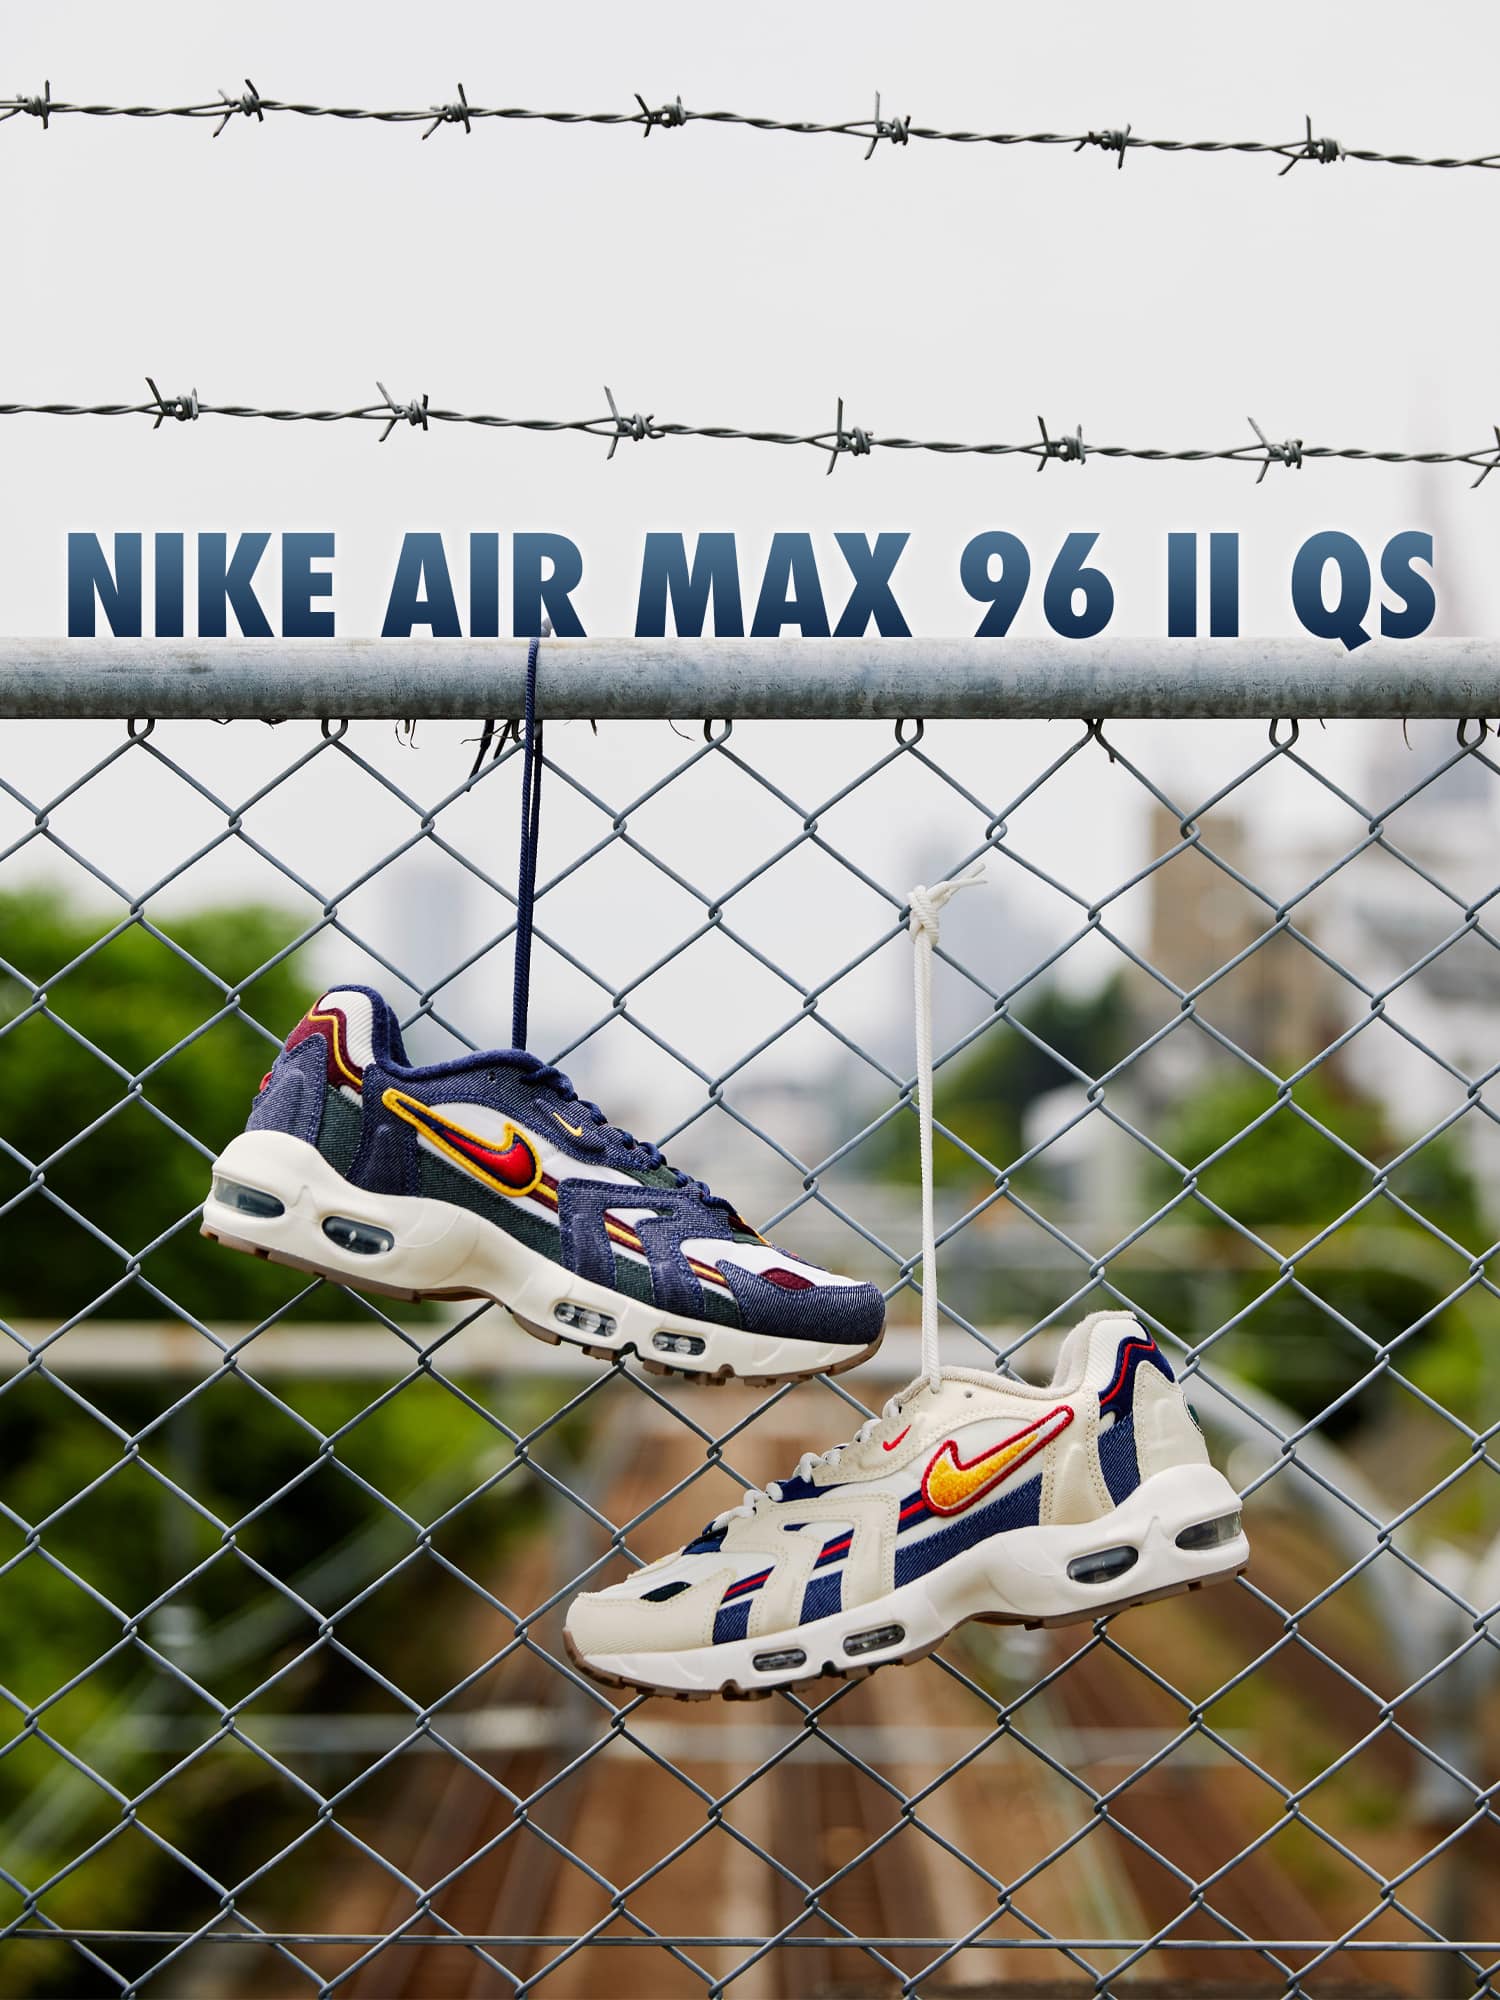 NIKE AIR MAX 96 II QS